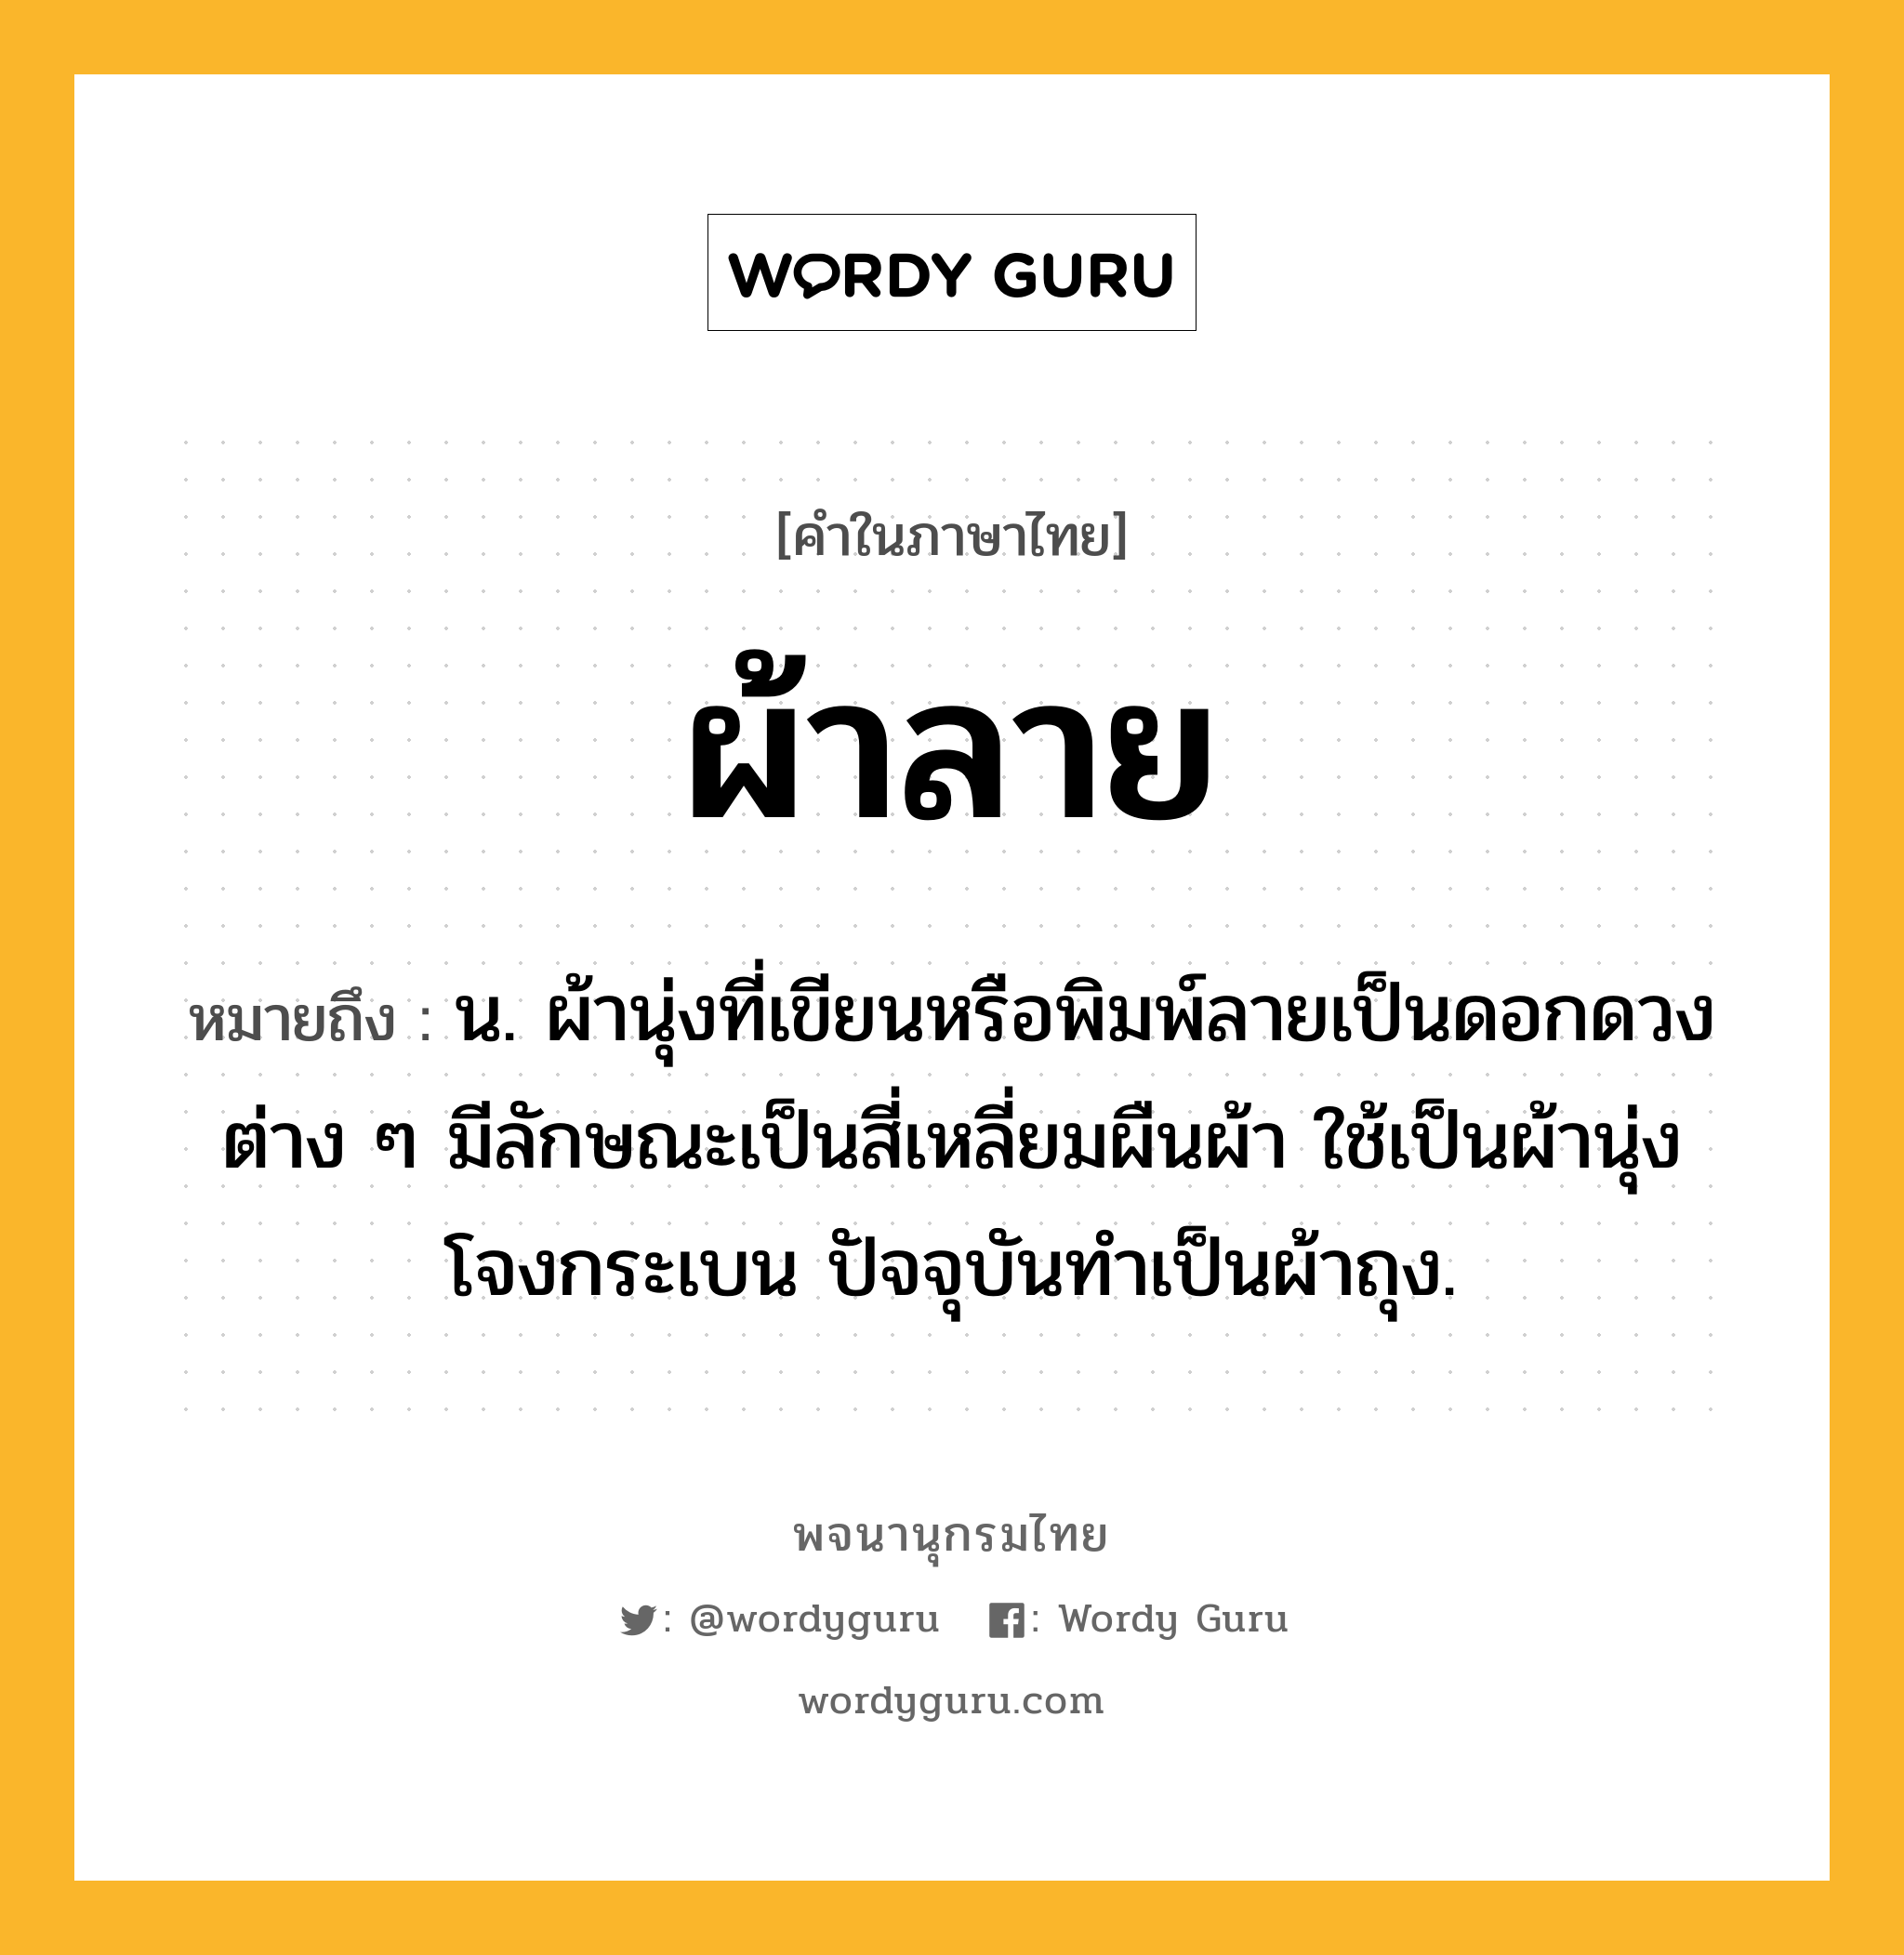 ผ้าลาย ความหมาย หมายถึงอะไร?, คำในภาษาไทย ผ้าลาย หมายถึง น. ผ้านุ่งที่เขียนหรือพิมพ์ลายเป็นดอกดวงต่าง ๆ มีลักษณะเป็นสี่เหลี่ยมผืนผ้า ใช้เป็นผ้านุ่งโจงกระเบน ปัจจุบันทําเป็นผ้าถุง.